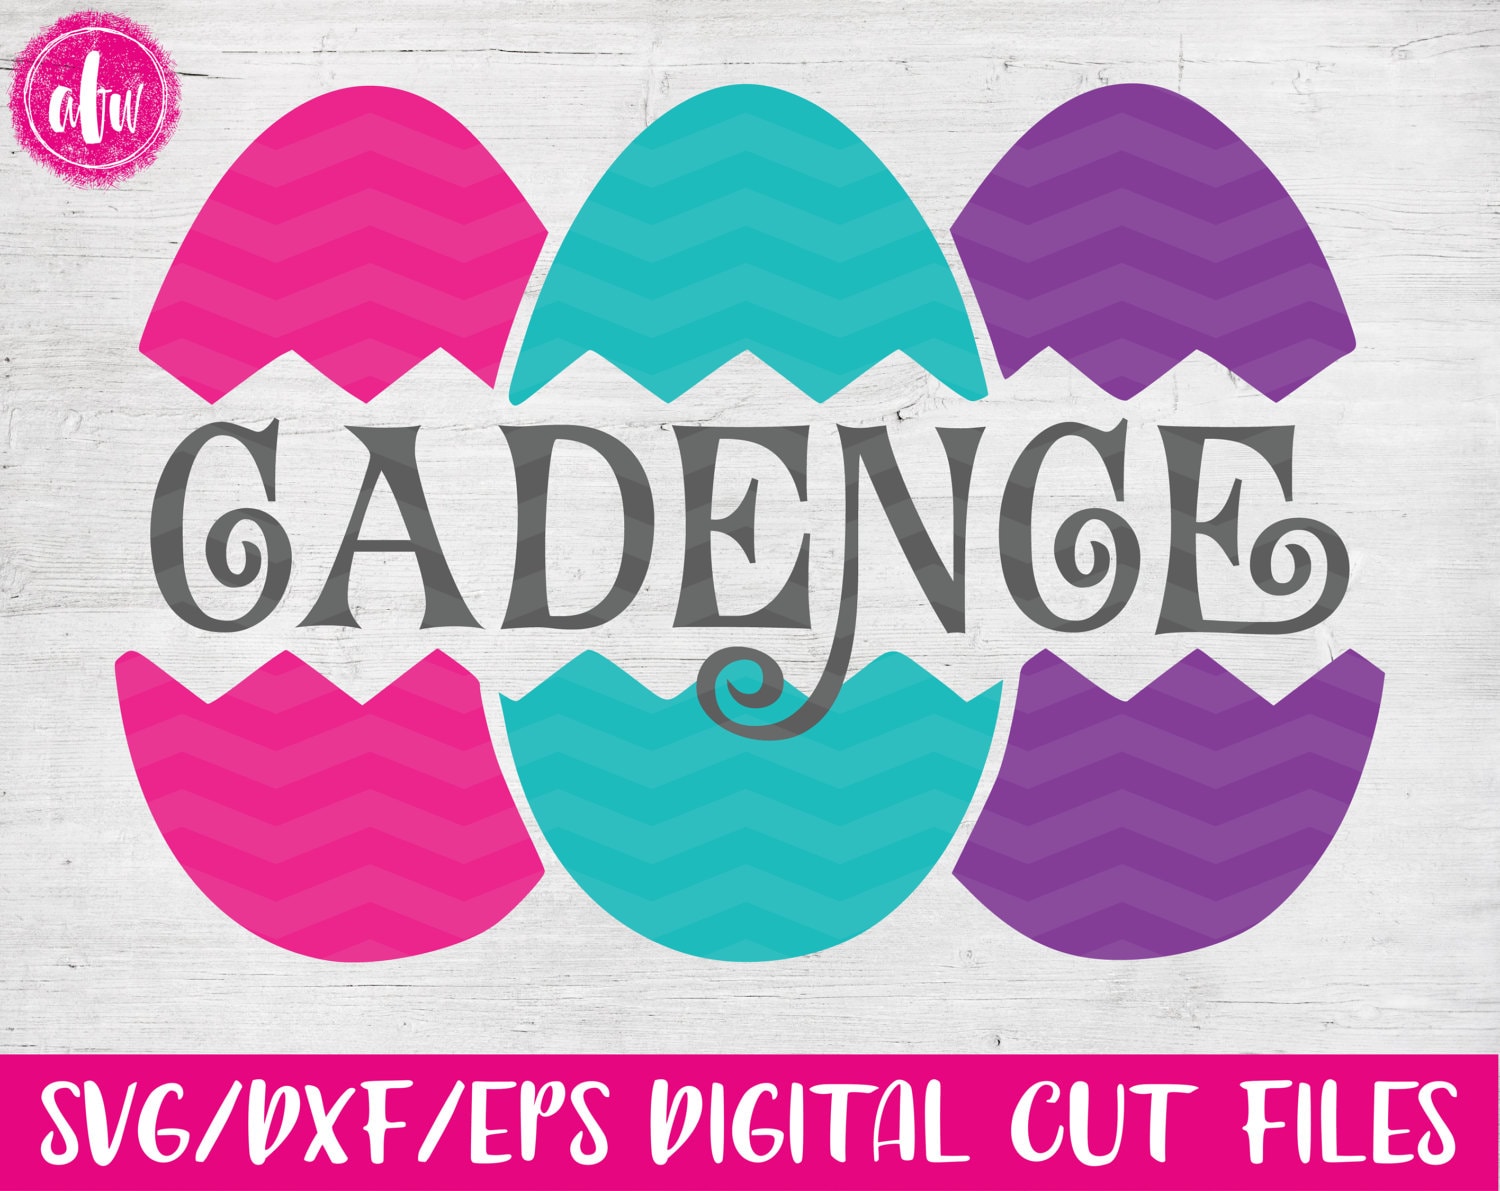 Download Split Cracked Easter Eggs SVG DXF EPS Cut File Vector